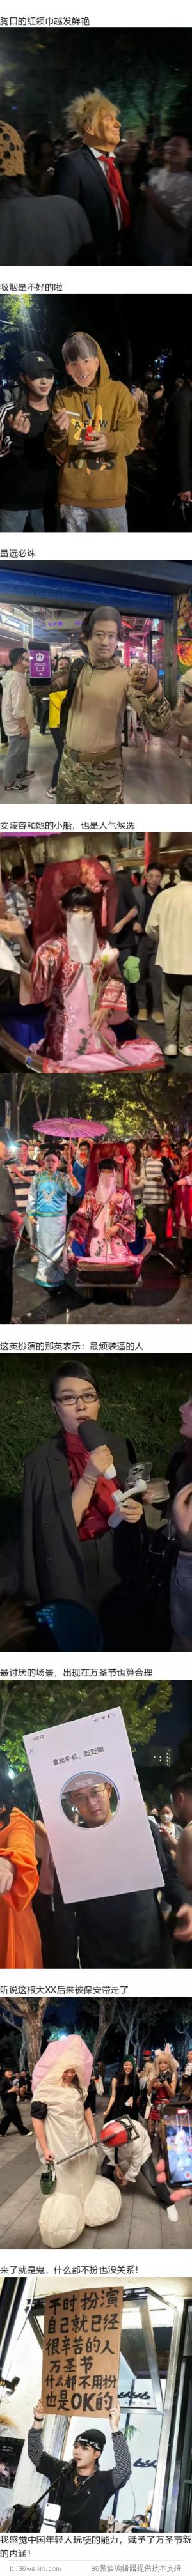 上海万圣节已超越美国万圣节  第2张